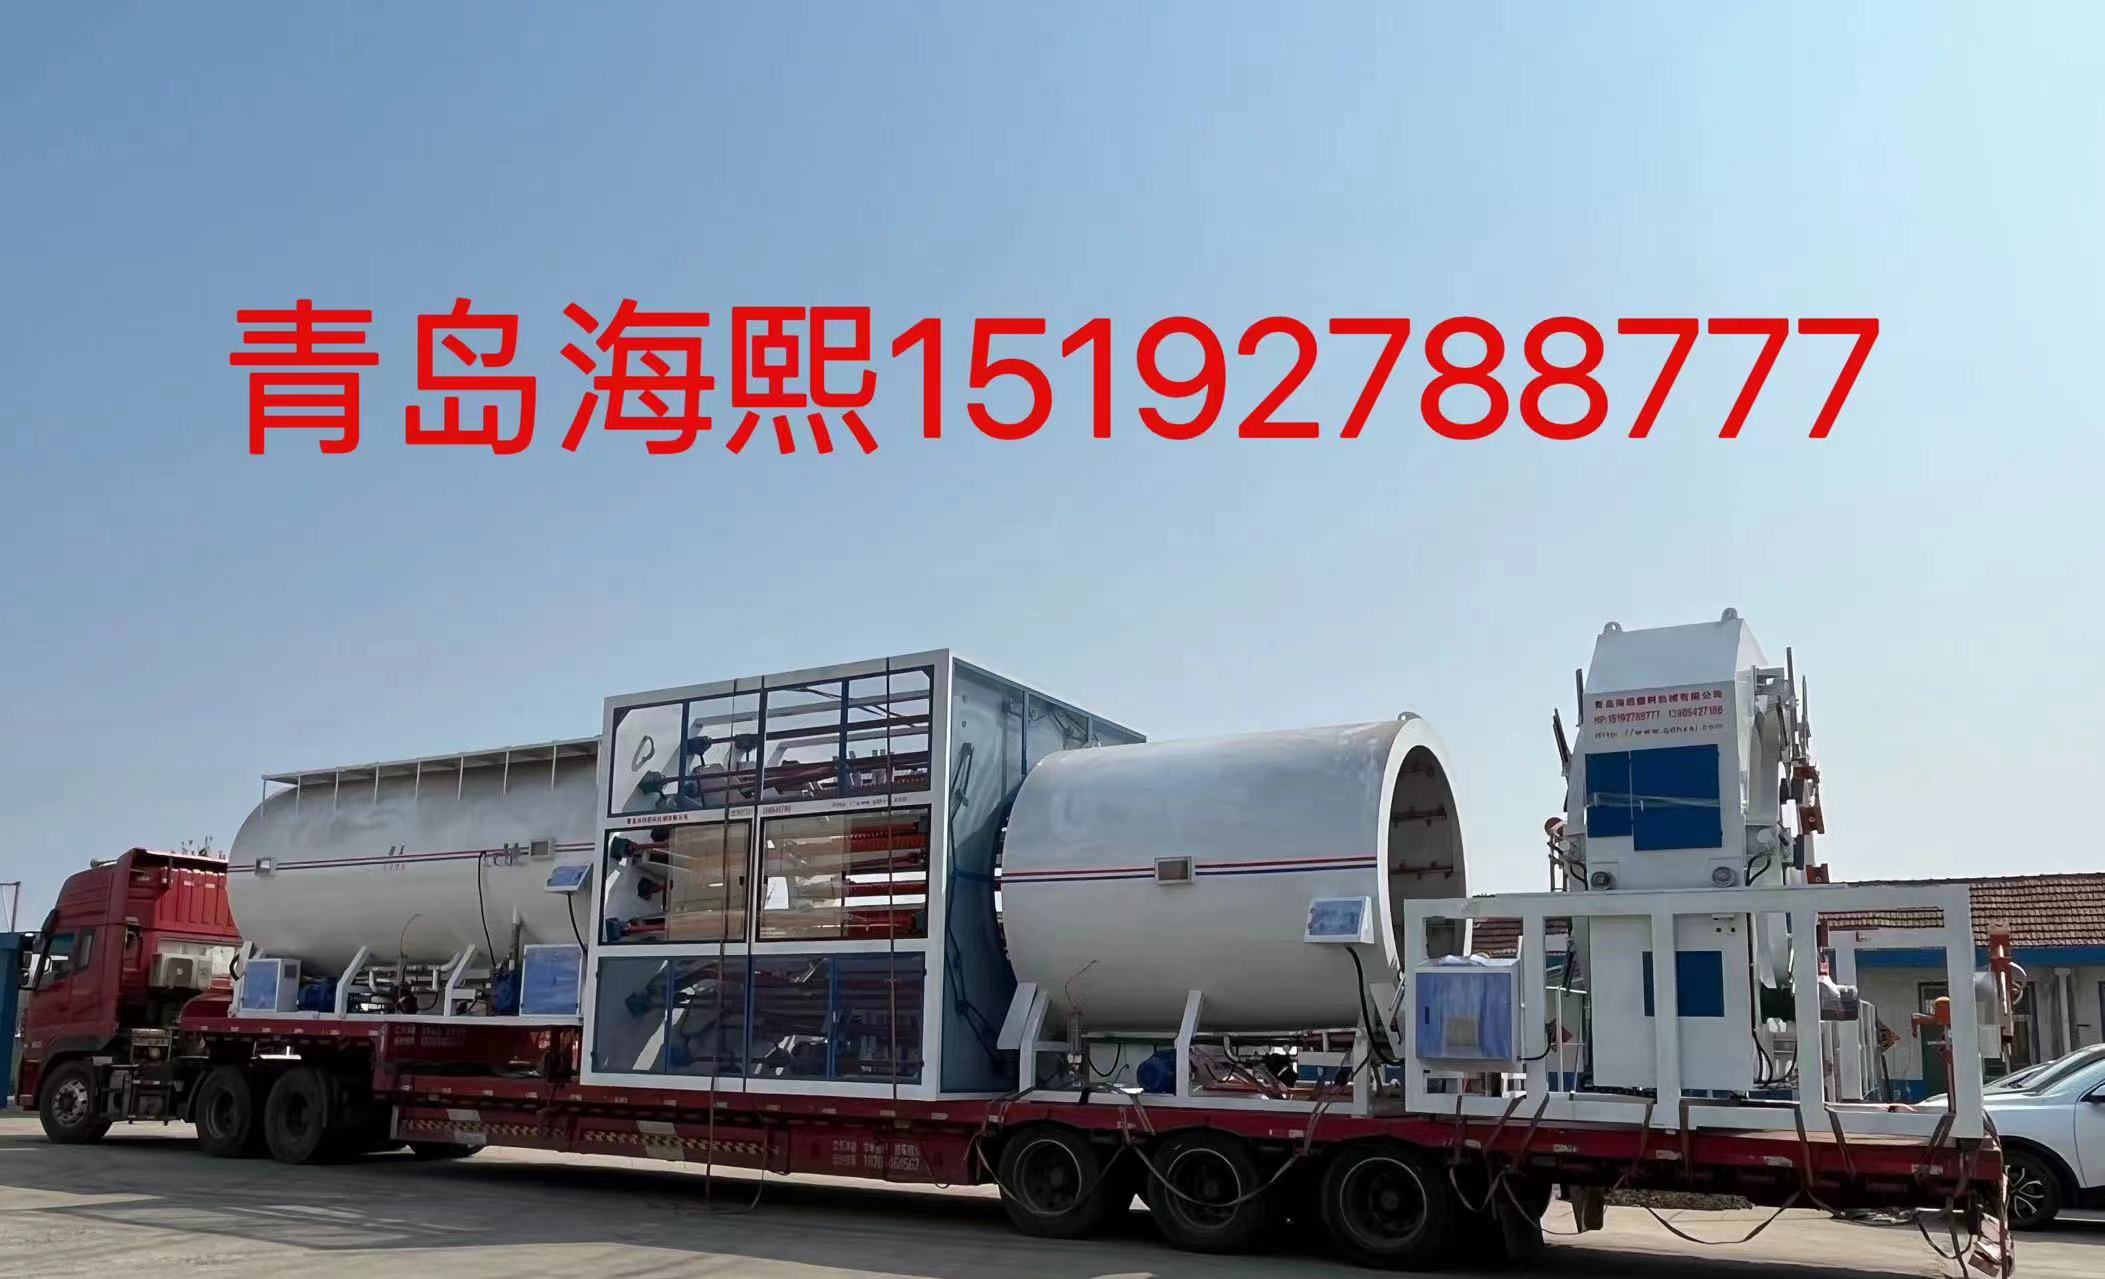 Harbin Lianxin pipe industry Co., Ltd. first car